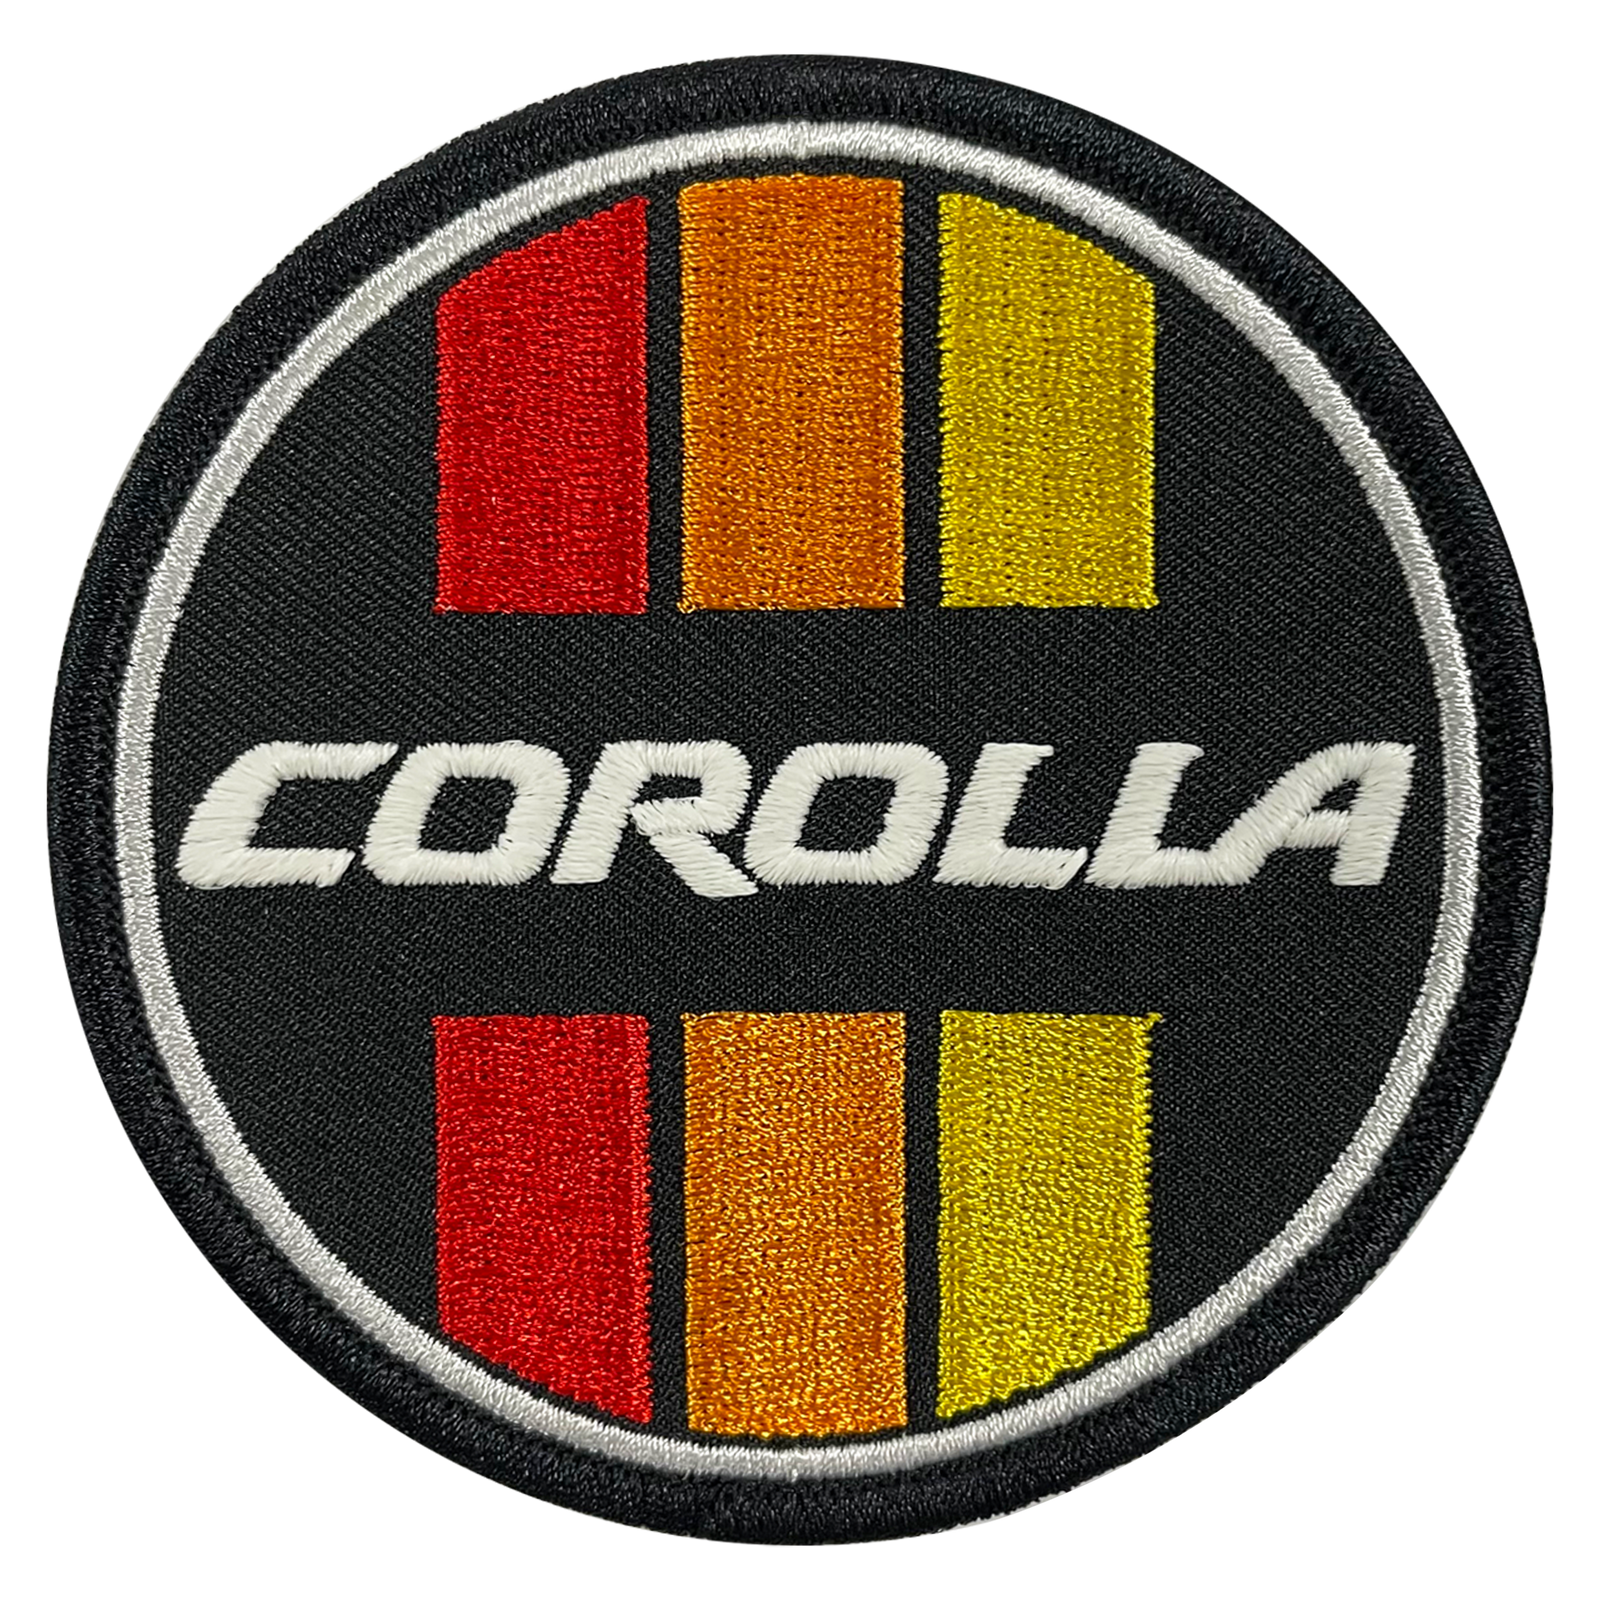 COROLLA Patches - GZila Designs